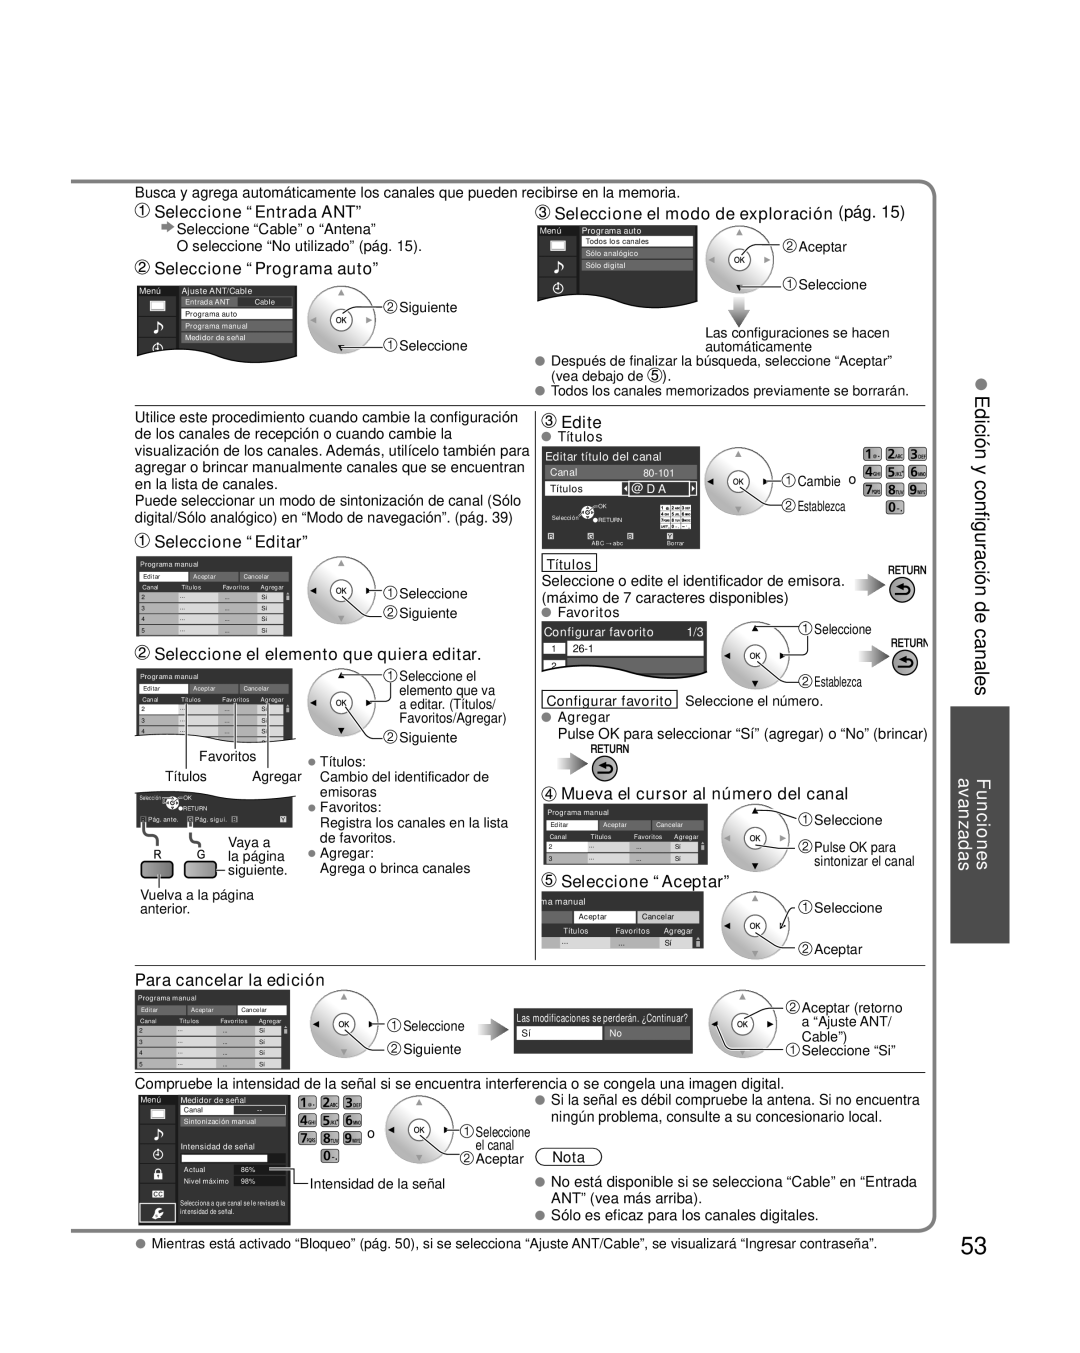 Panasonic TQB2AA0595 Seleccione “Entrada ANT”, Seleccione “Programa auto”, Seleccione el modo de exploración pág, Edite 